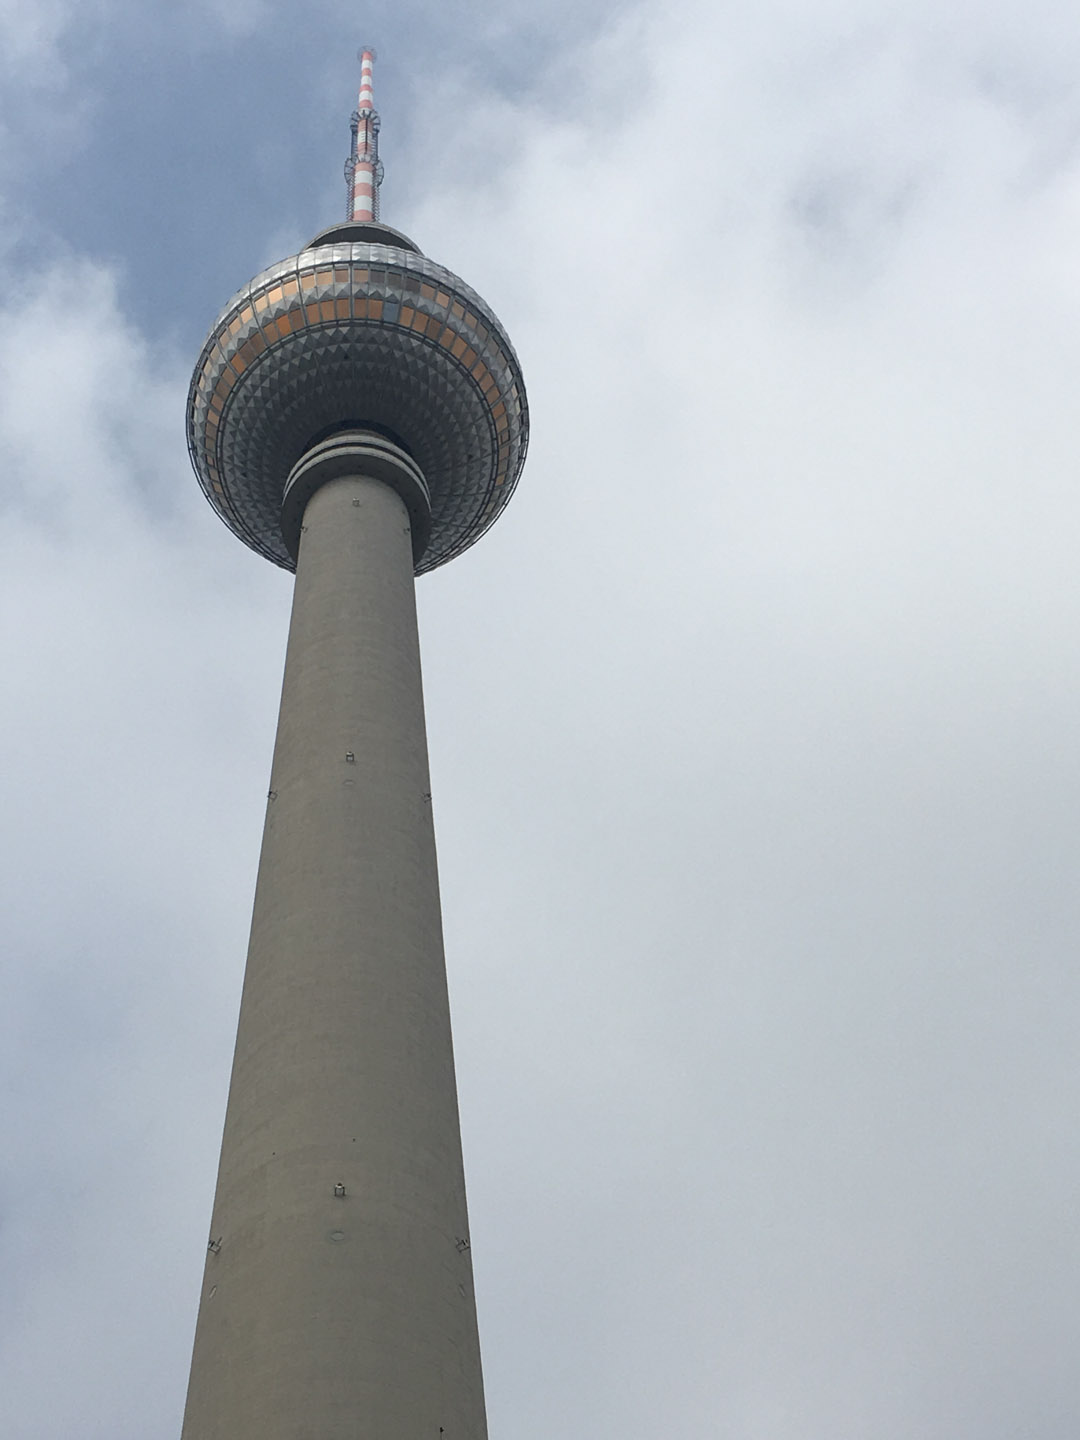 Fernsehturm de Berlín